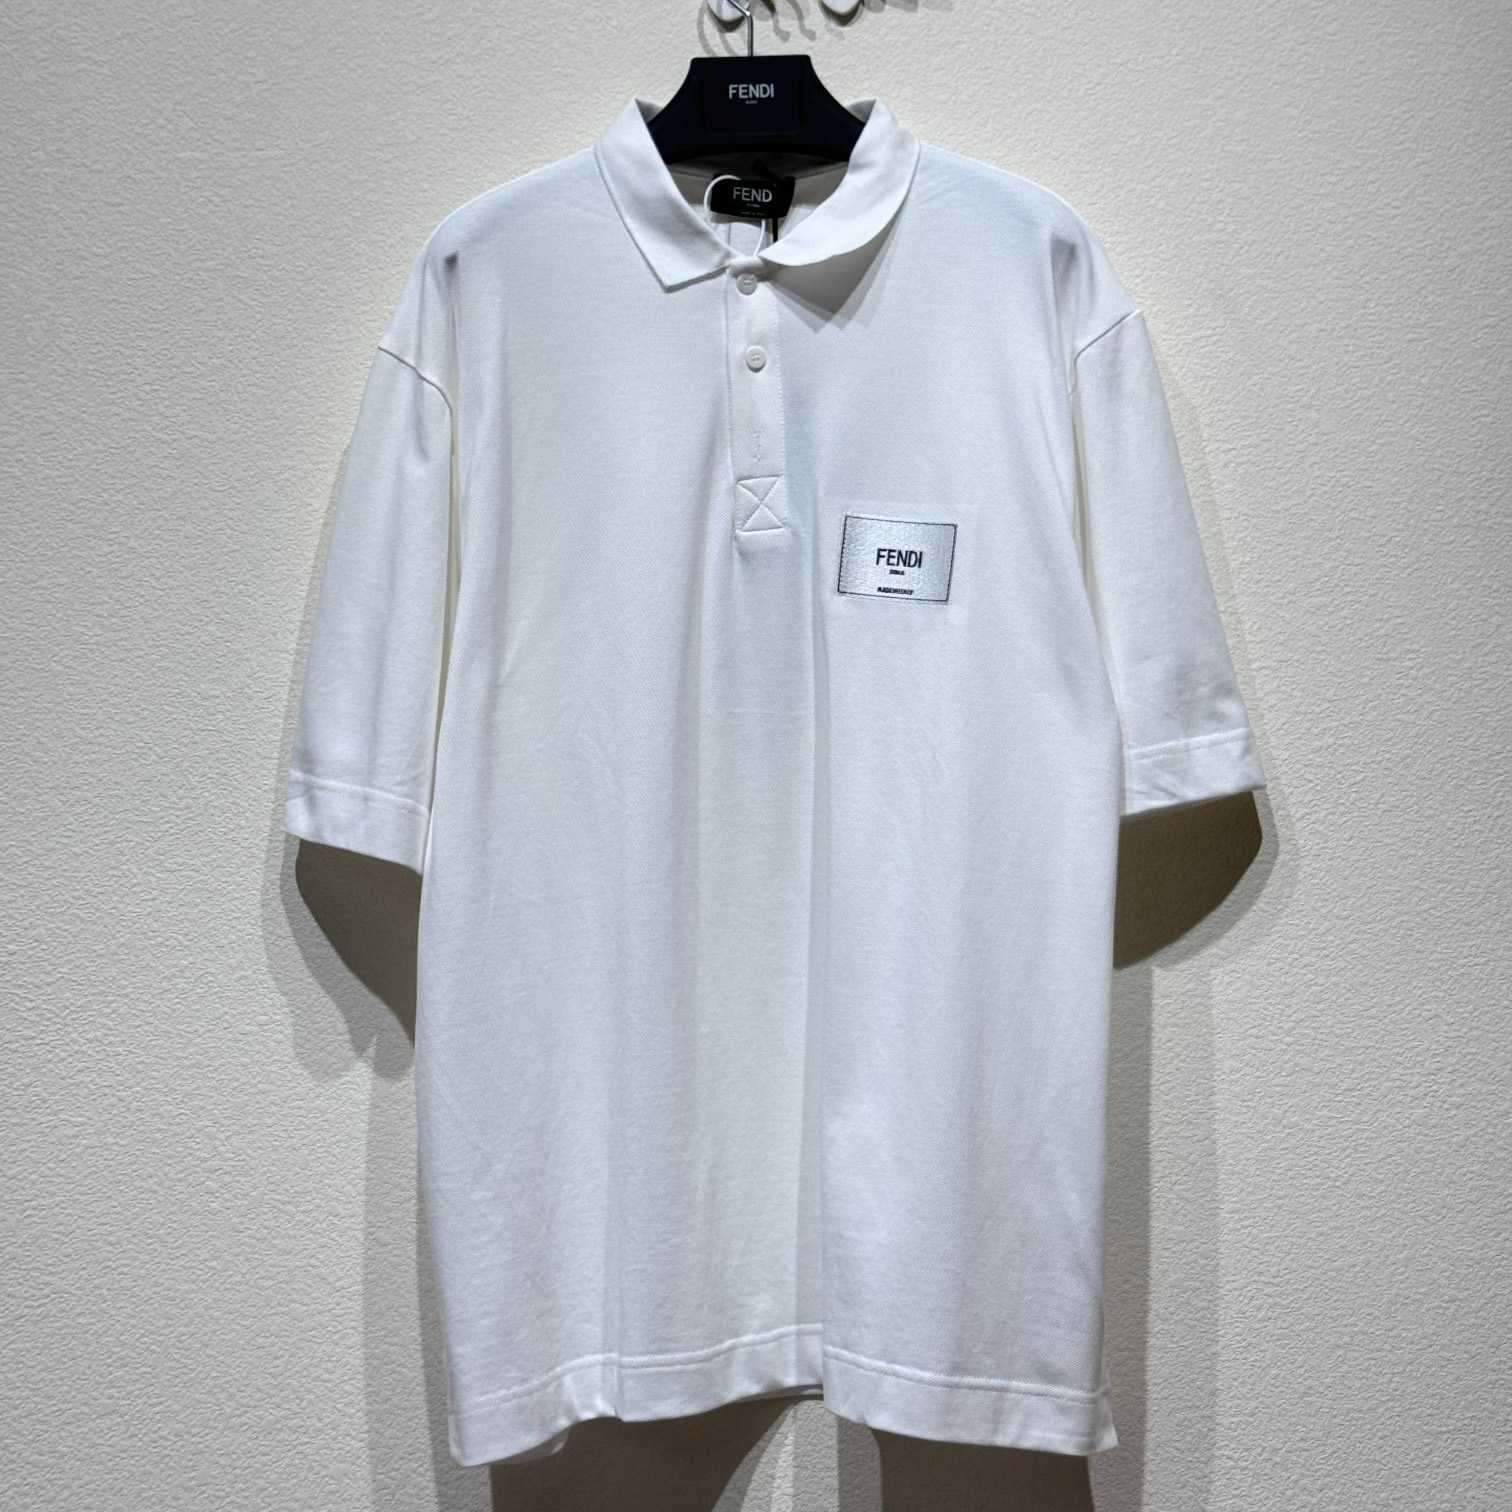 Fendi White Cotton Polo Shirt - everydesigner